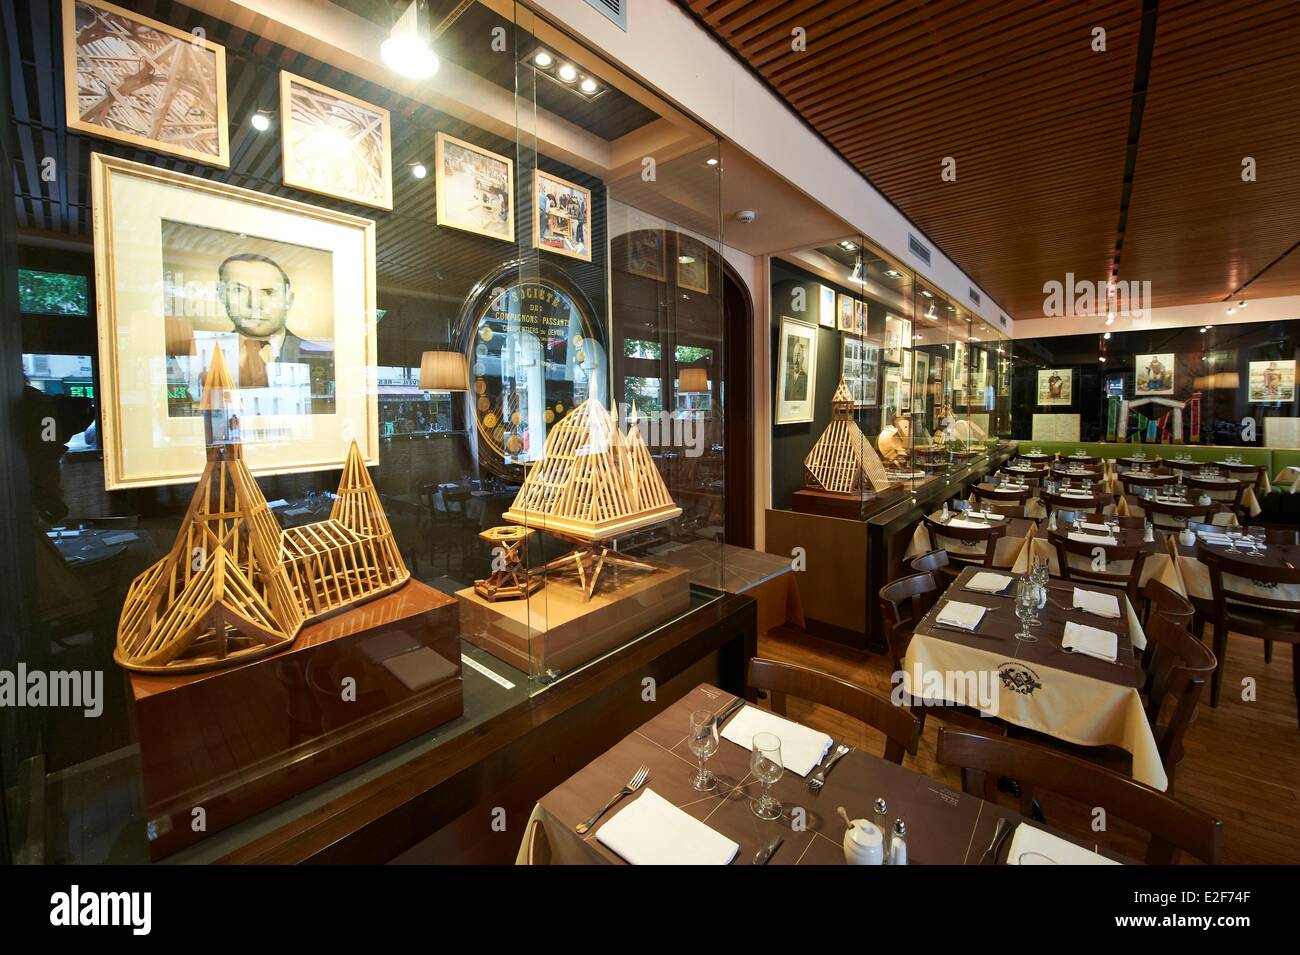 France, Paris, Musée de l'ouvrier charpentier dans le 19ème, le restaurant, Arts Science recueillie Banque D'Images